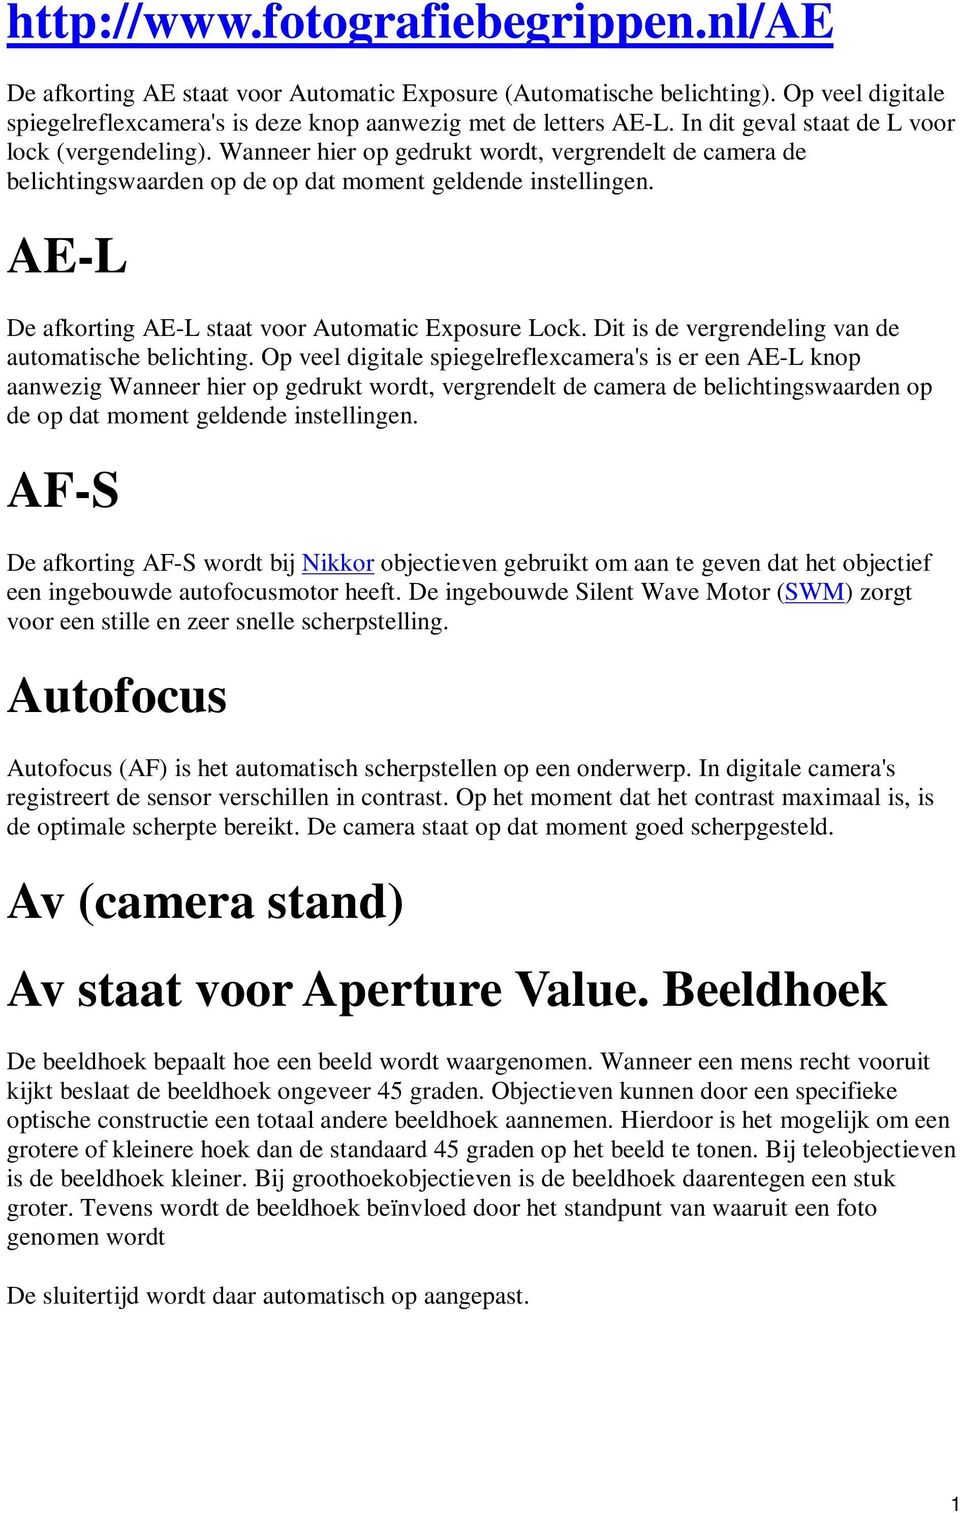 AE-L De afkorting AE-L staat voor Automatic Exposure Lock. Dit is de vergrendeling van de automatische belichting.